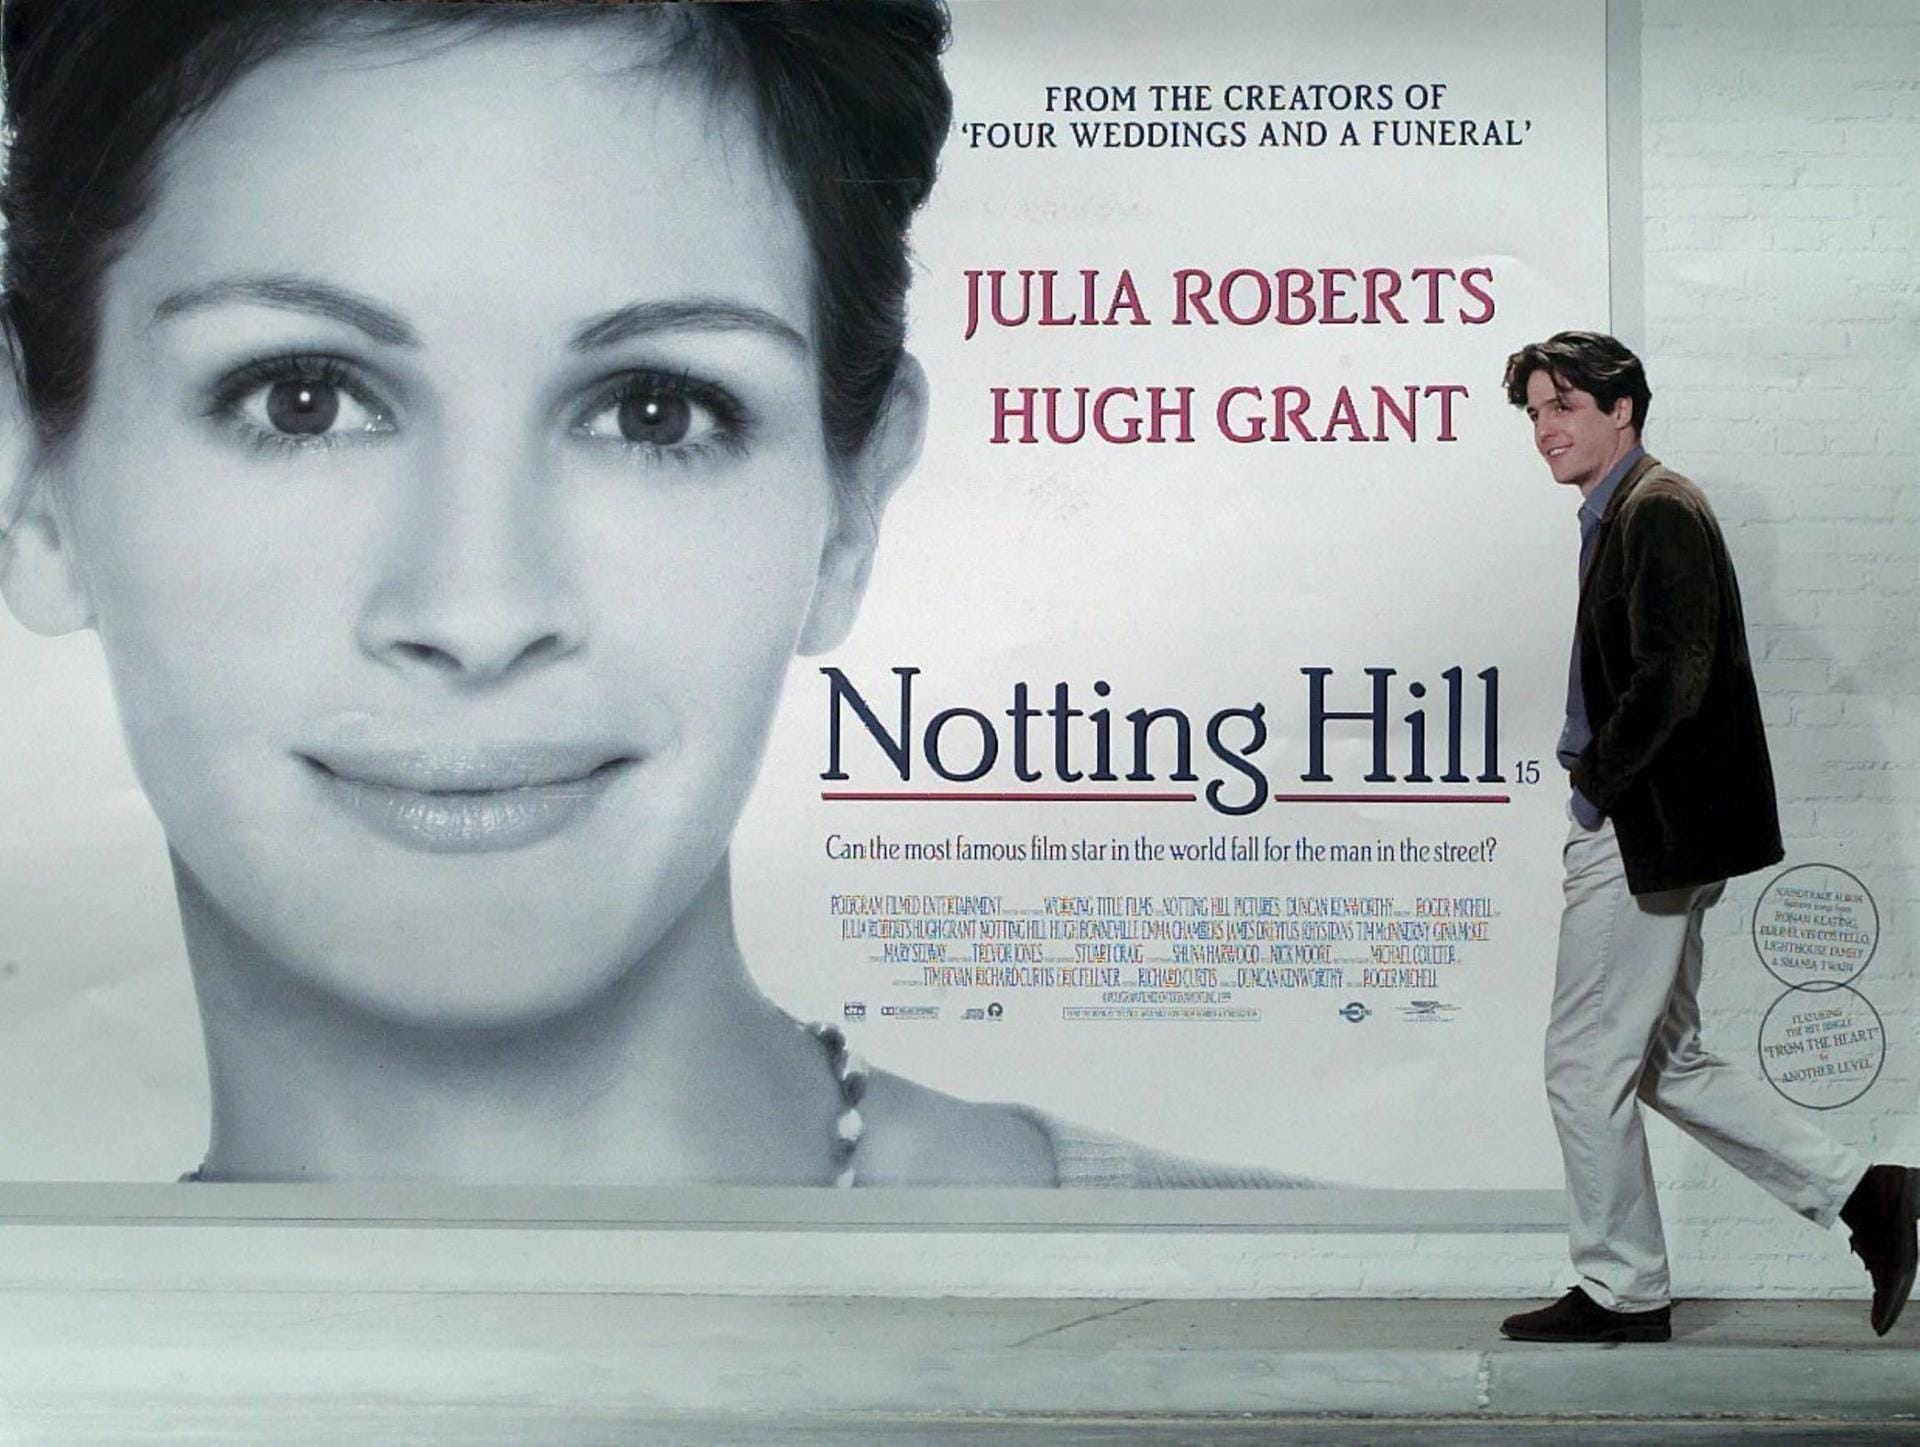 Notting Hill: Hugh Grant verliebt sich in seiner Rolle in einen Filmstar, der von Julia Roberts gespielt wird.